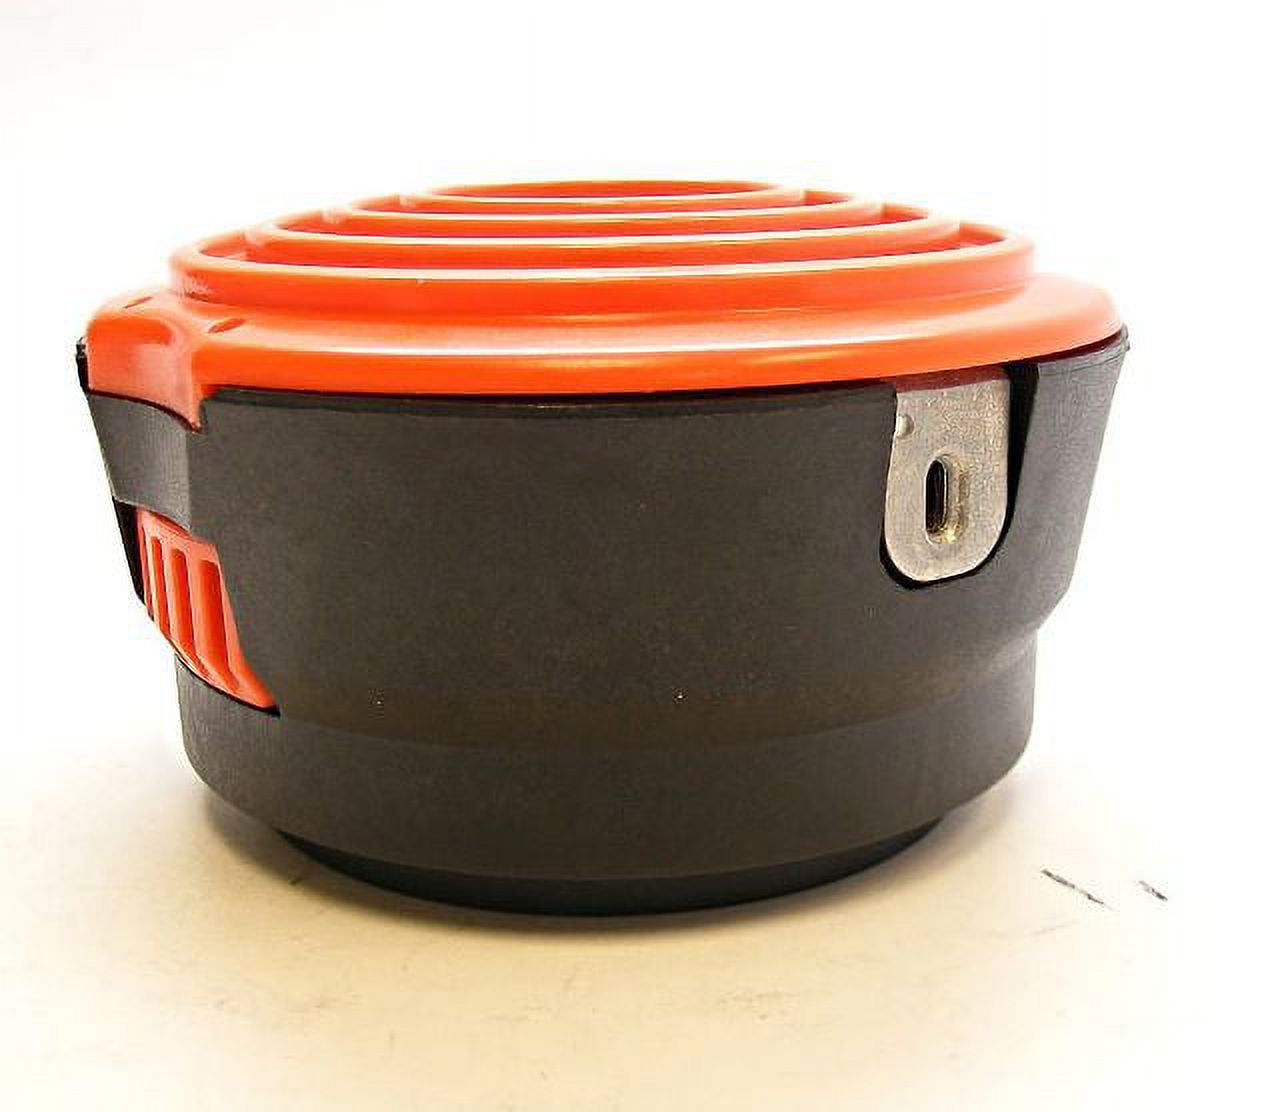 3 Spool Kit Trimmer Cap for Black & Decker 90540850 GH1000